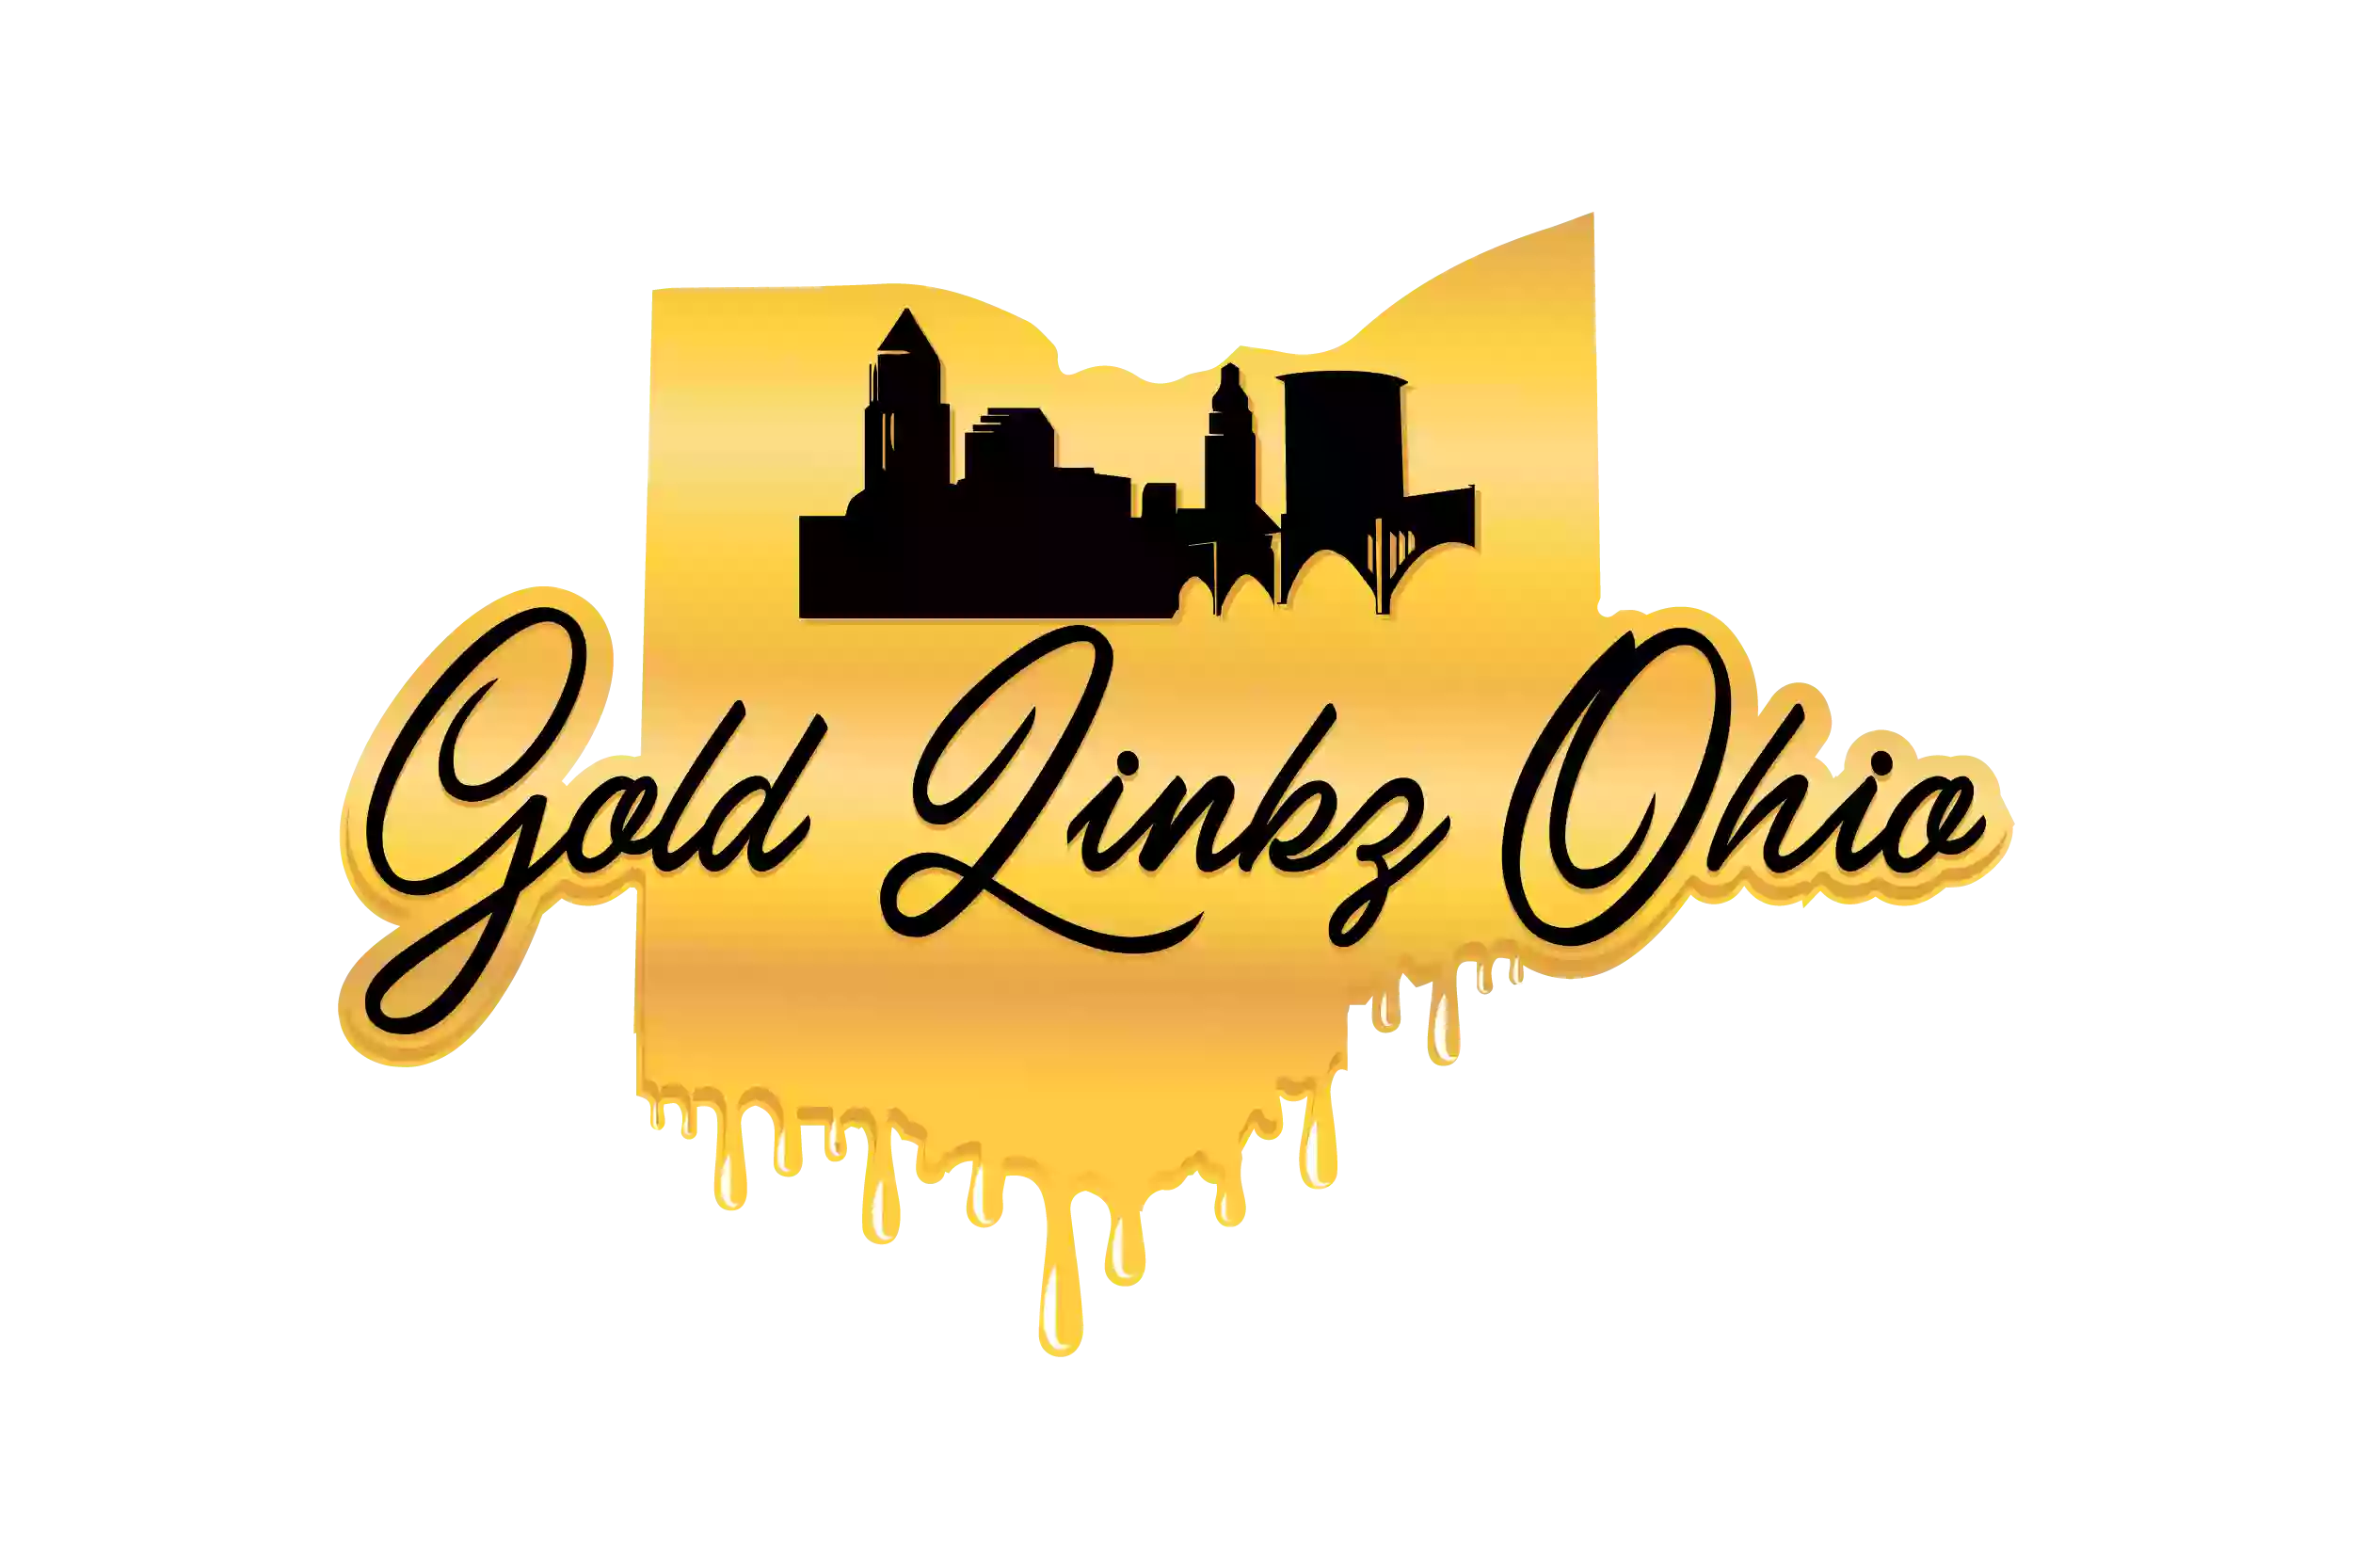 Gold Linkz Ohio